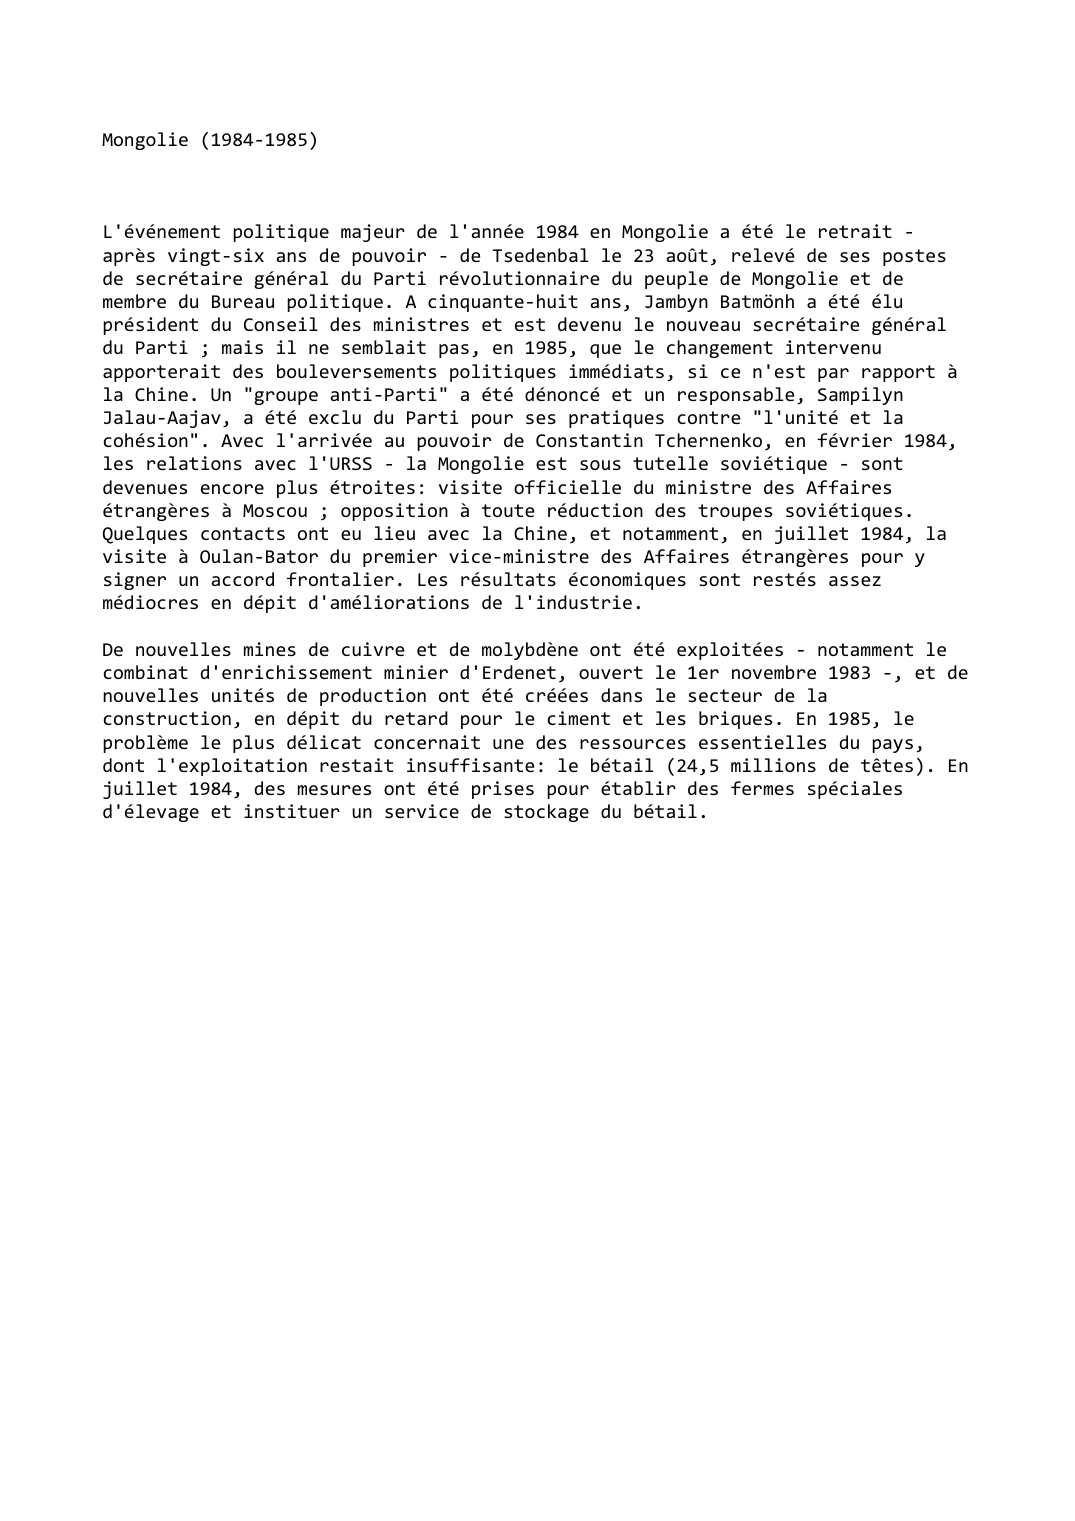 Prévisualisation du document Mongolie (1984-1985)